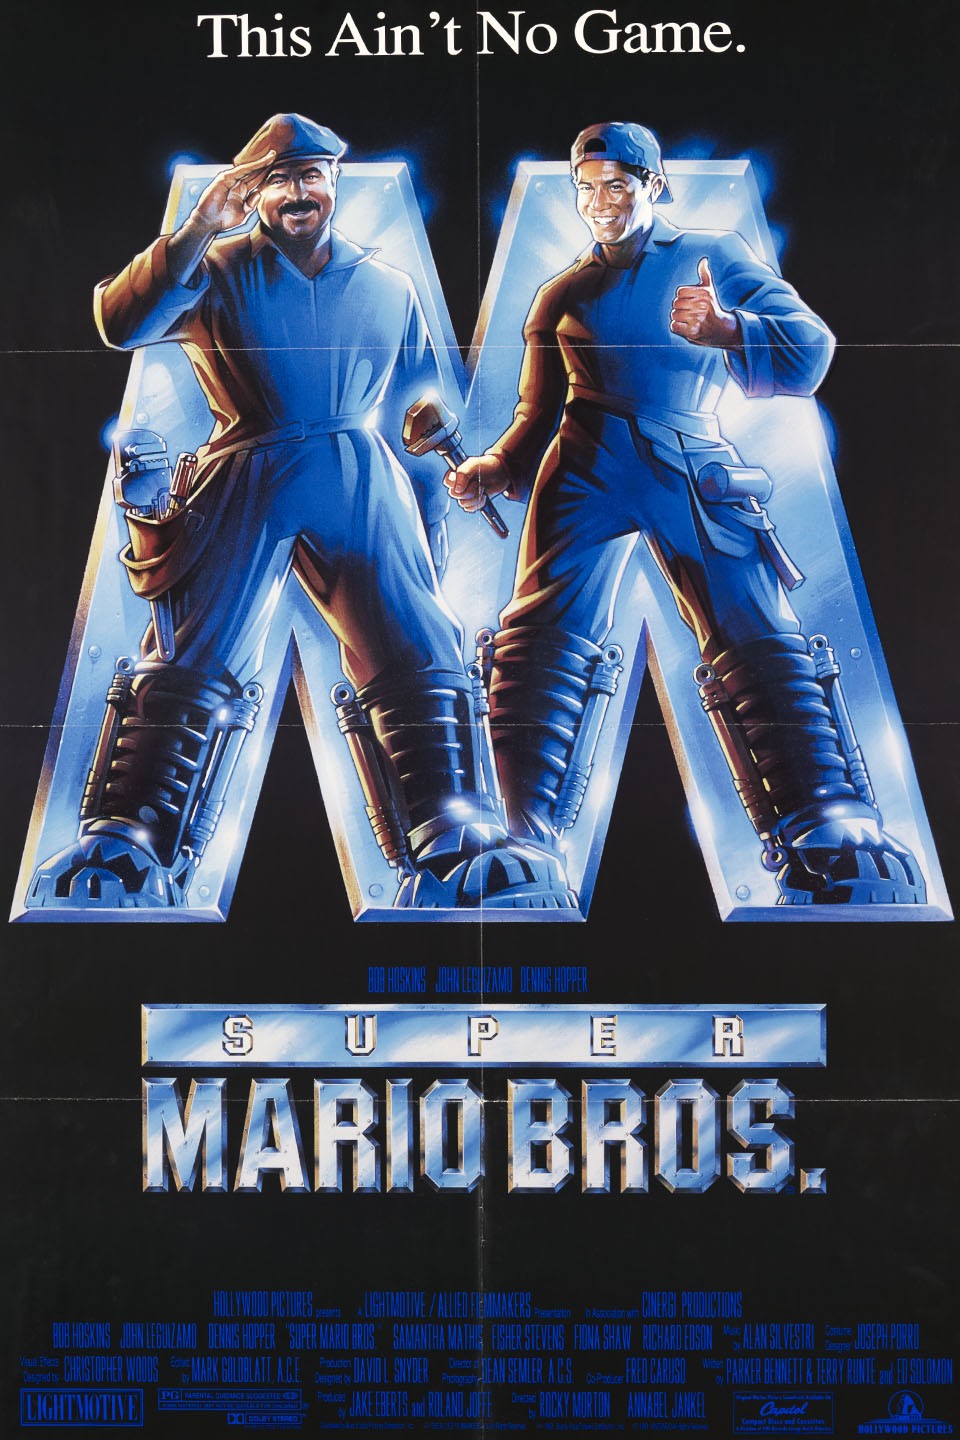 Super Mario Bros - O Filme estreia hoje: o que esperar?